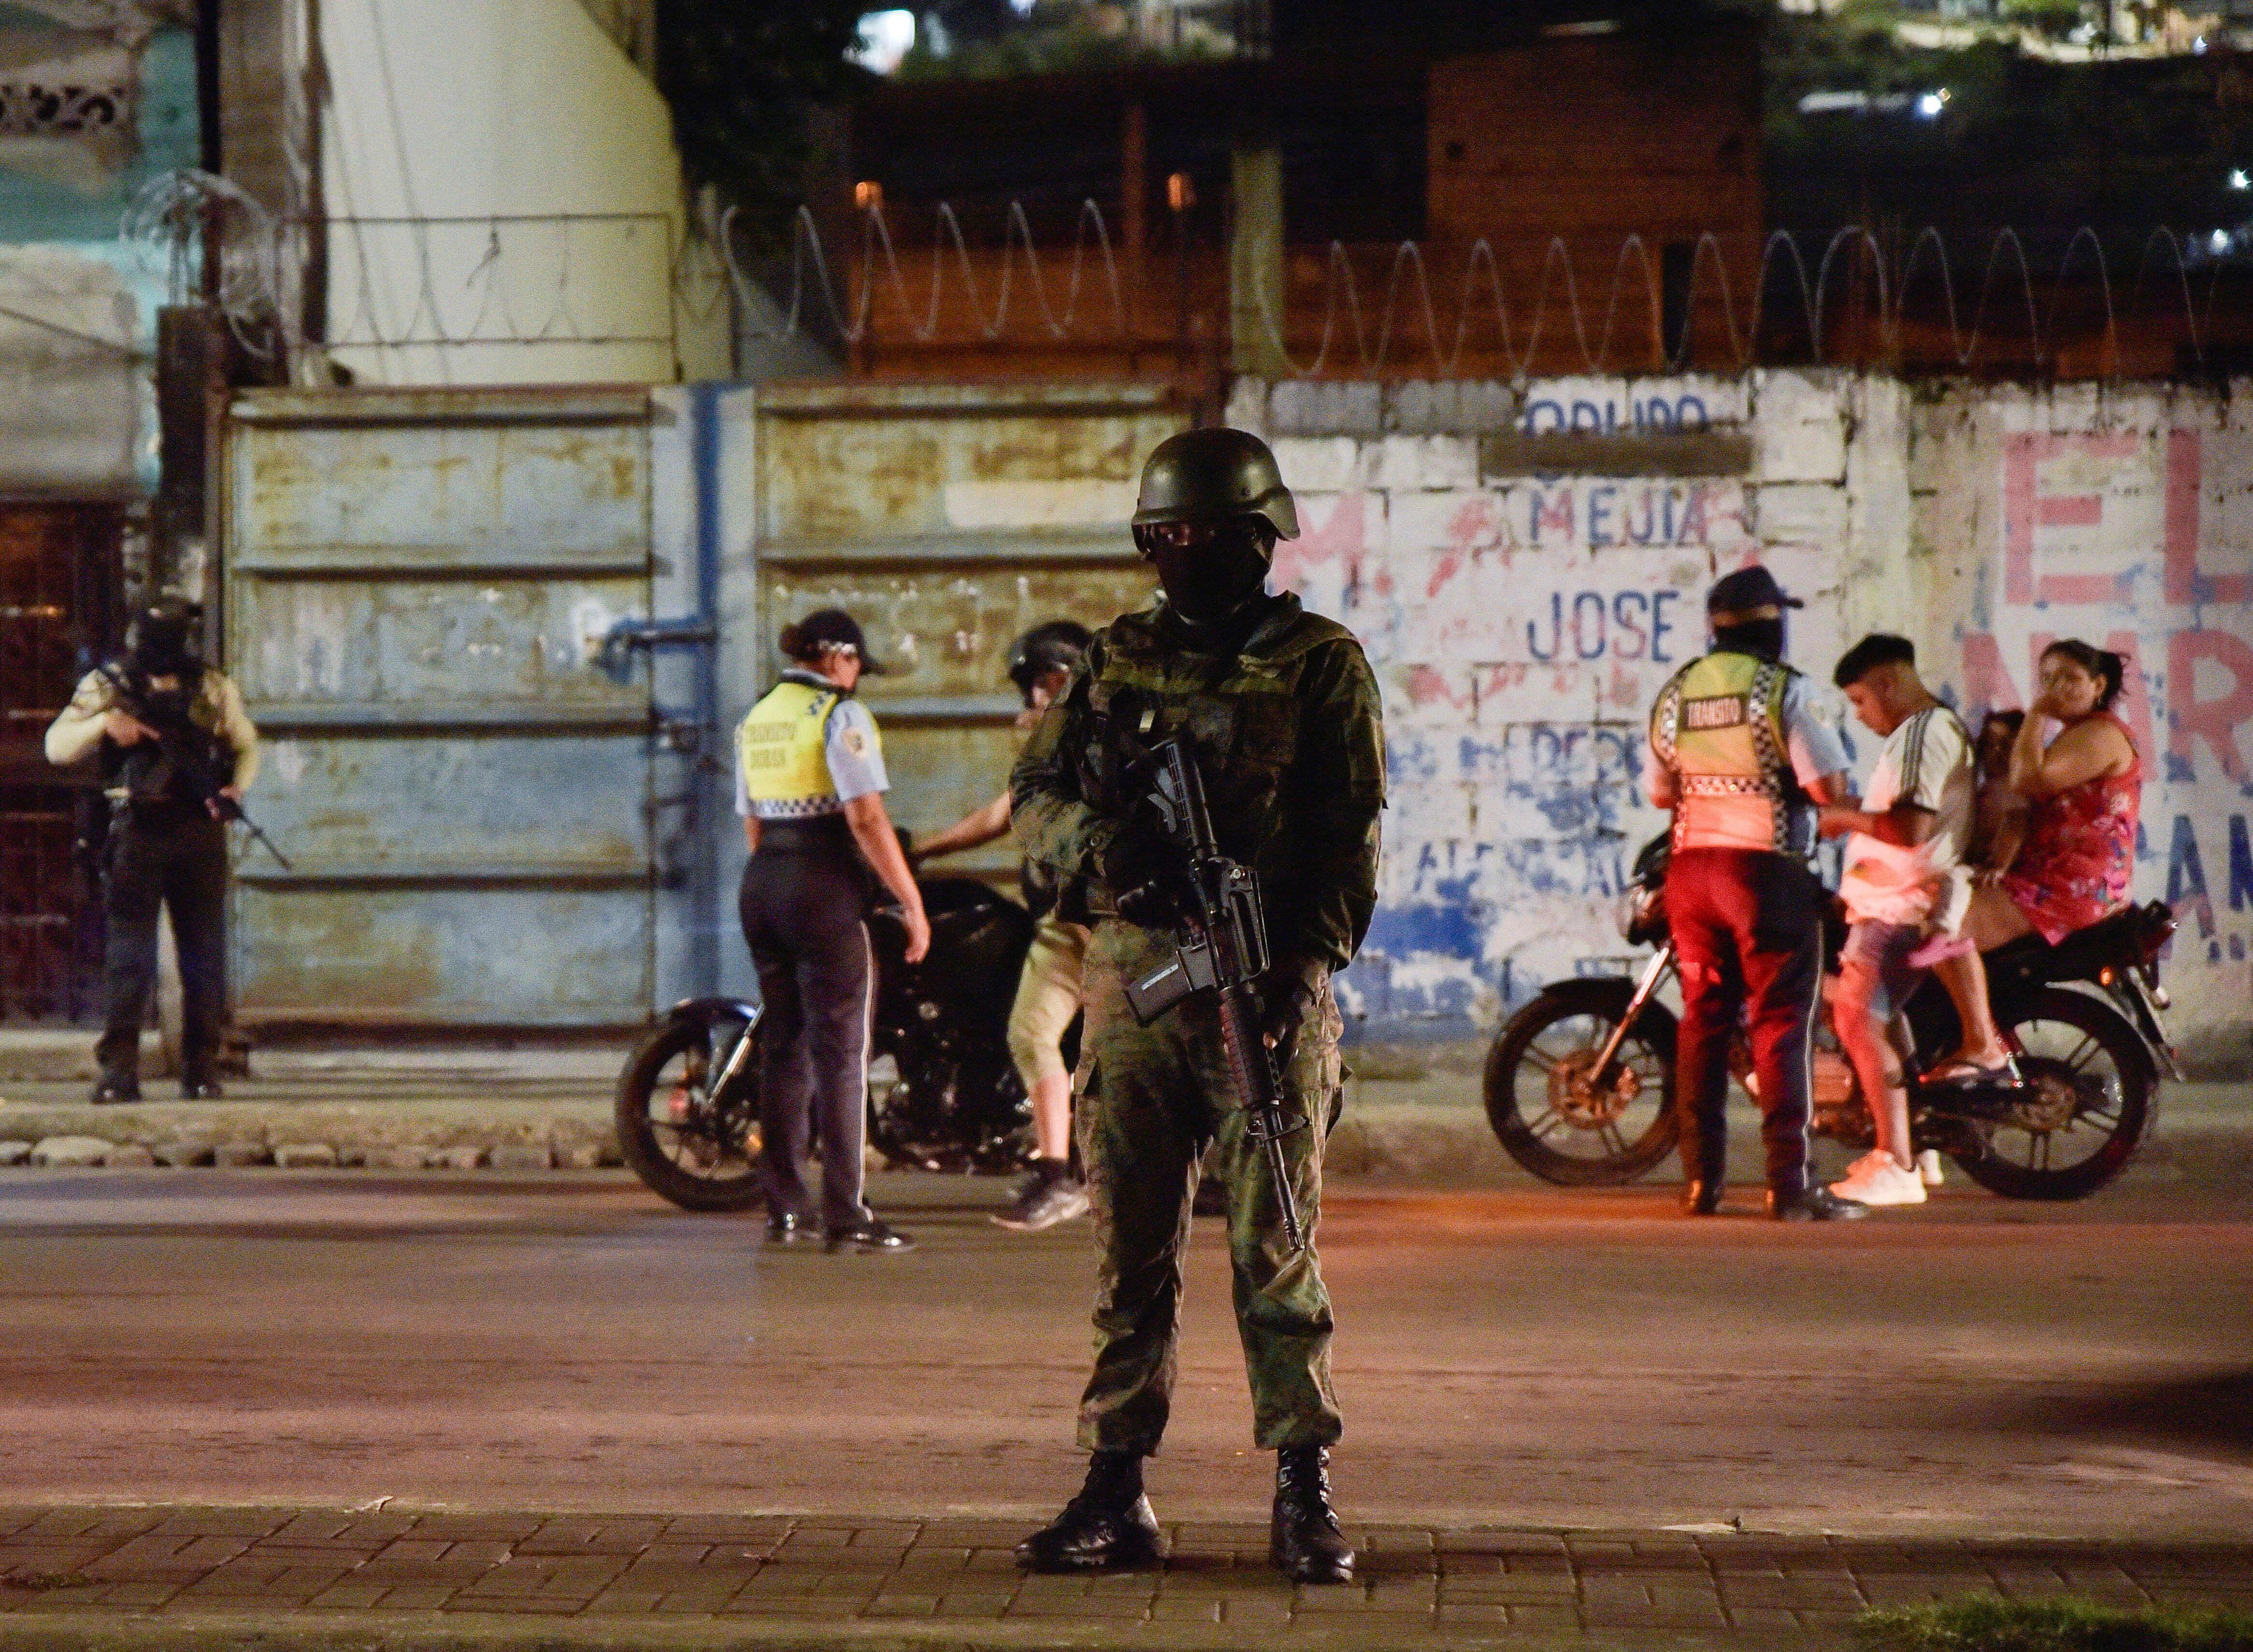 Las fuerzas del orden ejecutan operaciones antiterroristas en Ecuador. (REUTERS/Vicente Gaibor del Pino)